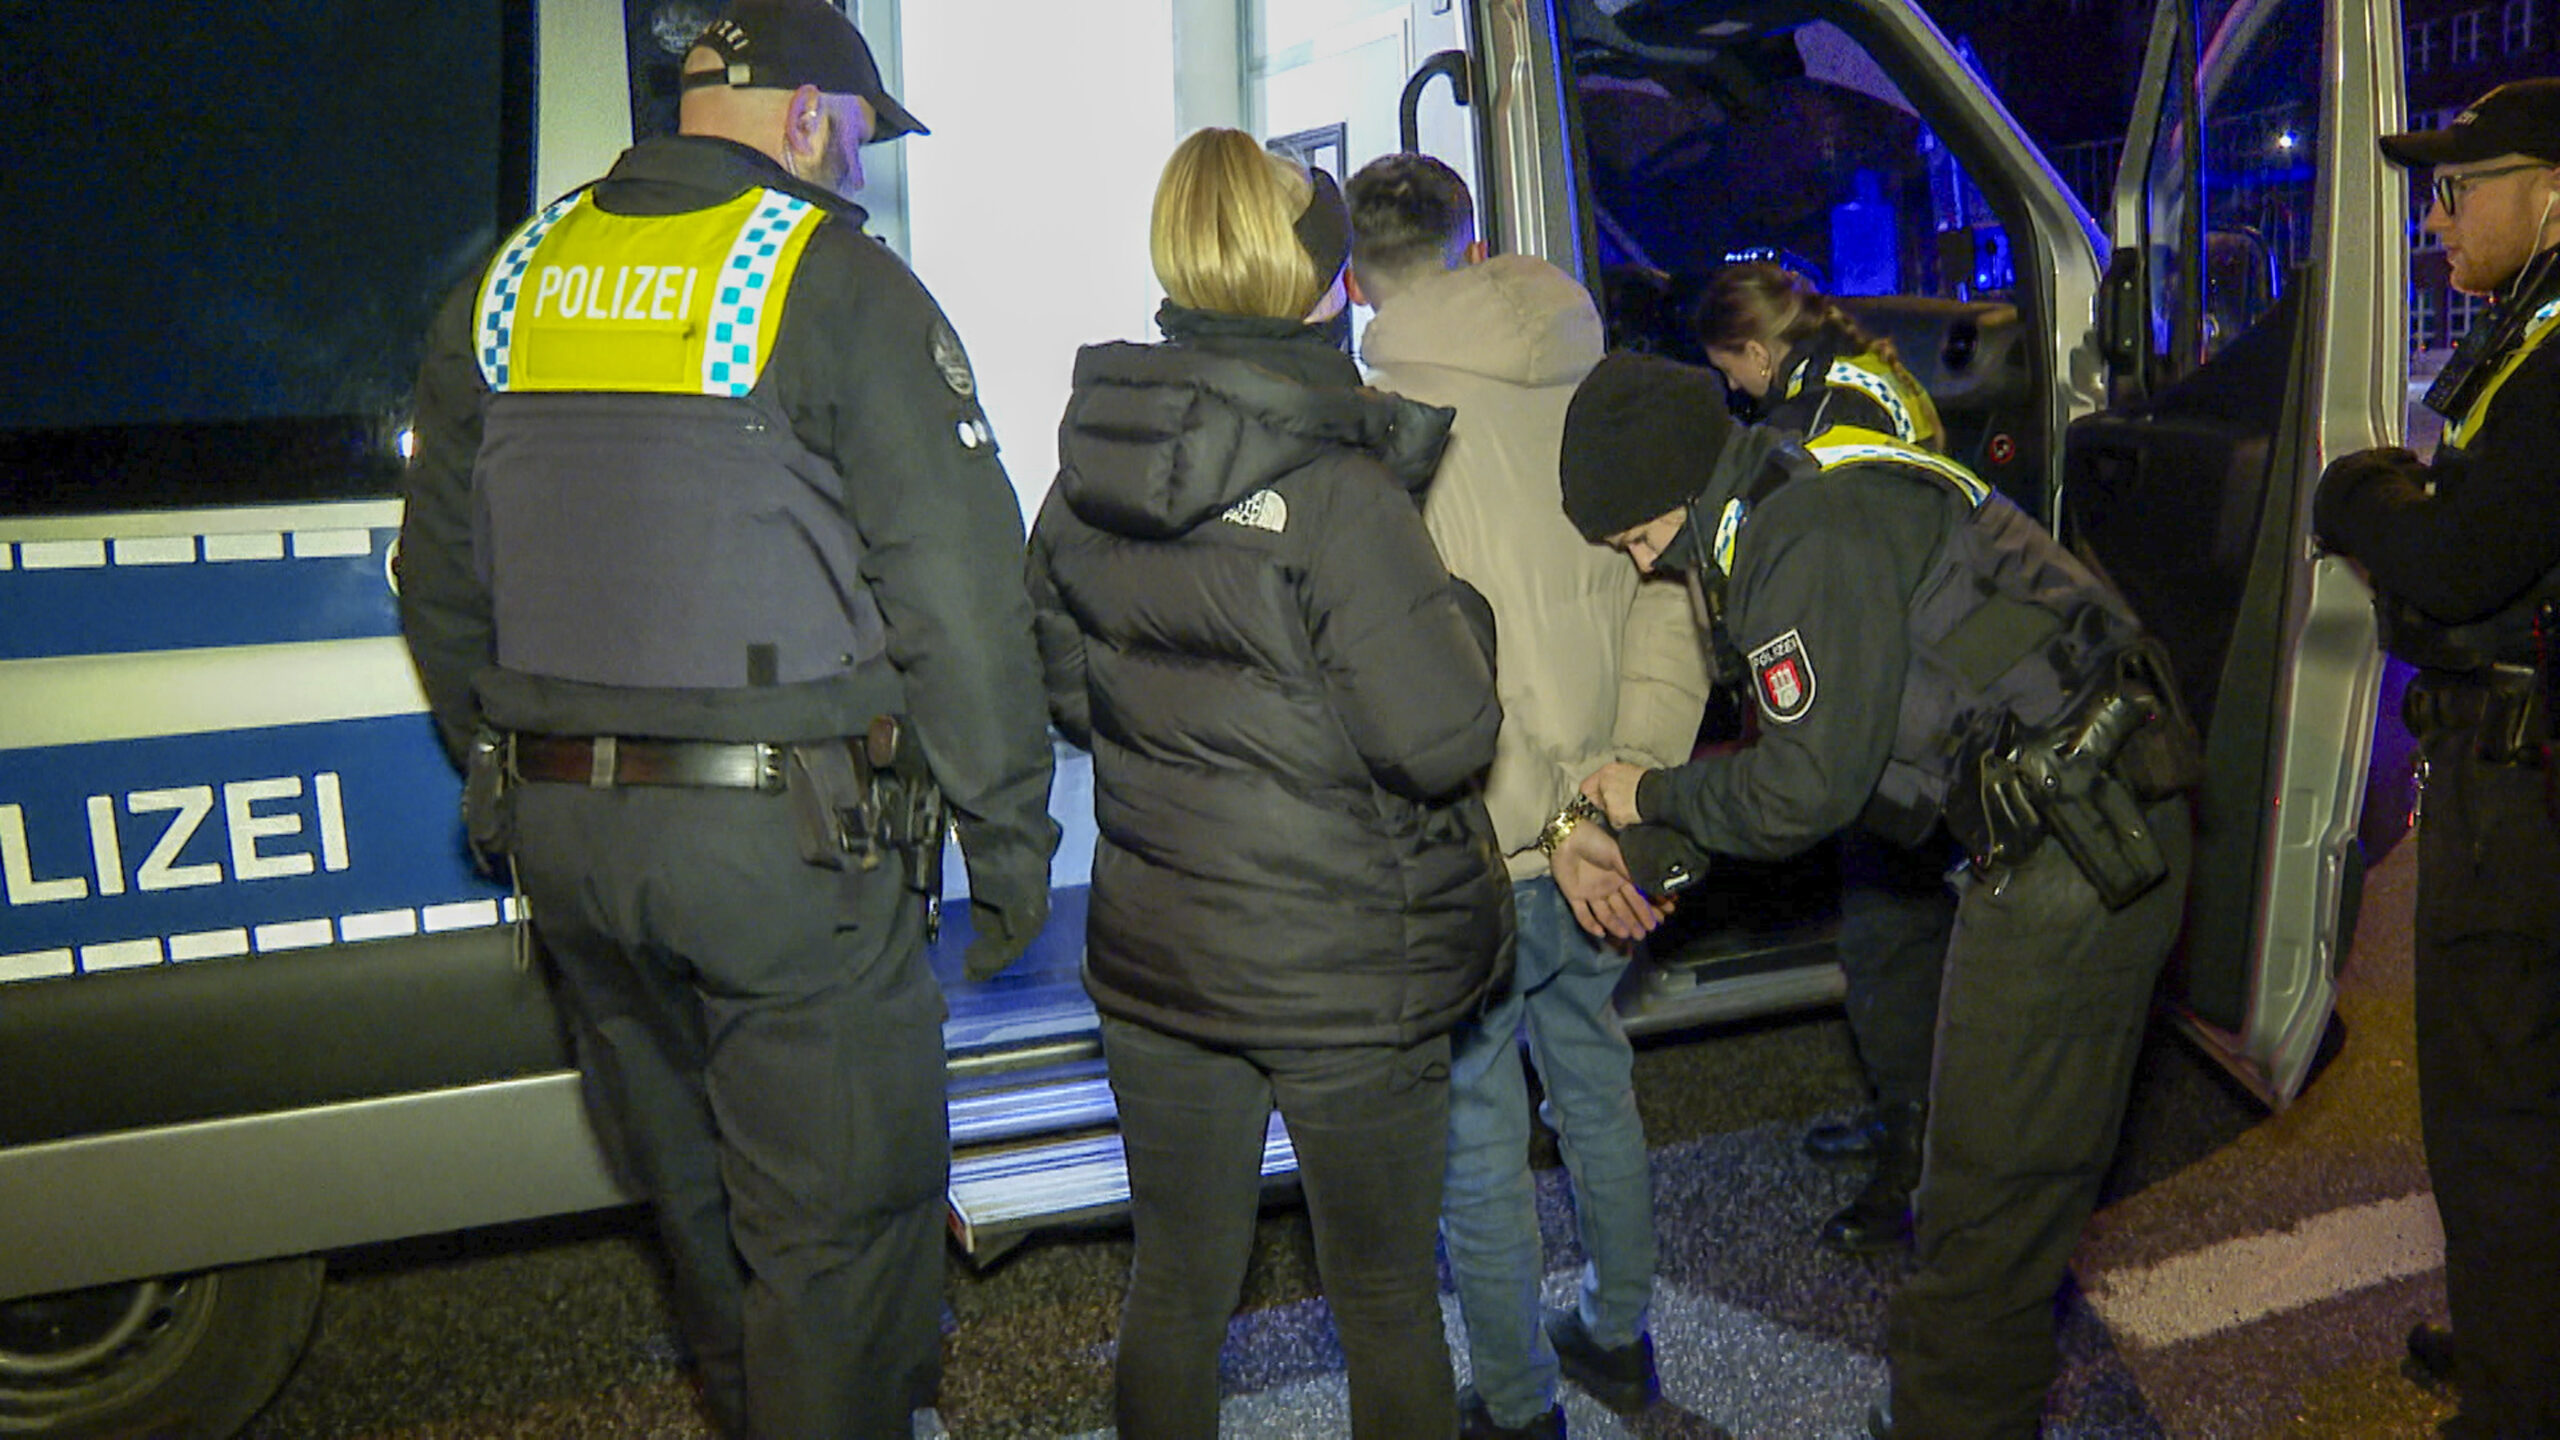 Drogentaxi auf St. Pauli gestoppt – Fahrer festgenommen